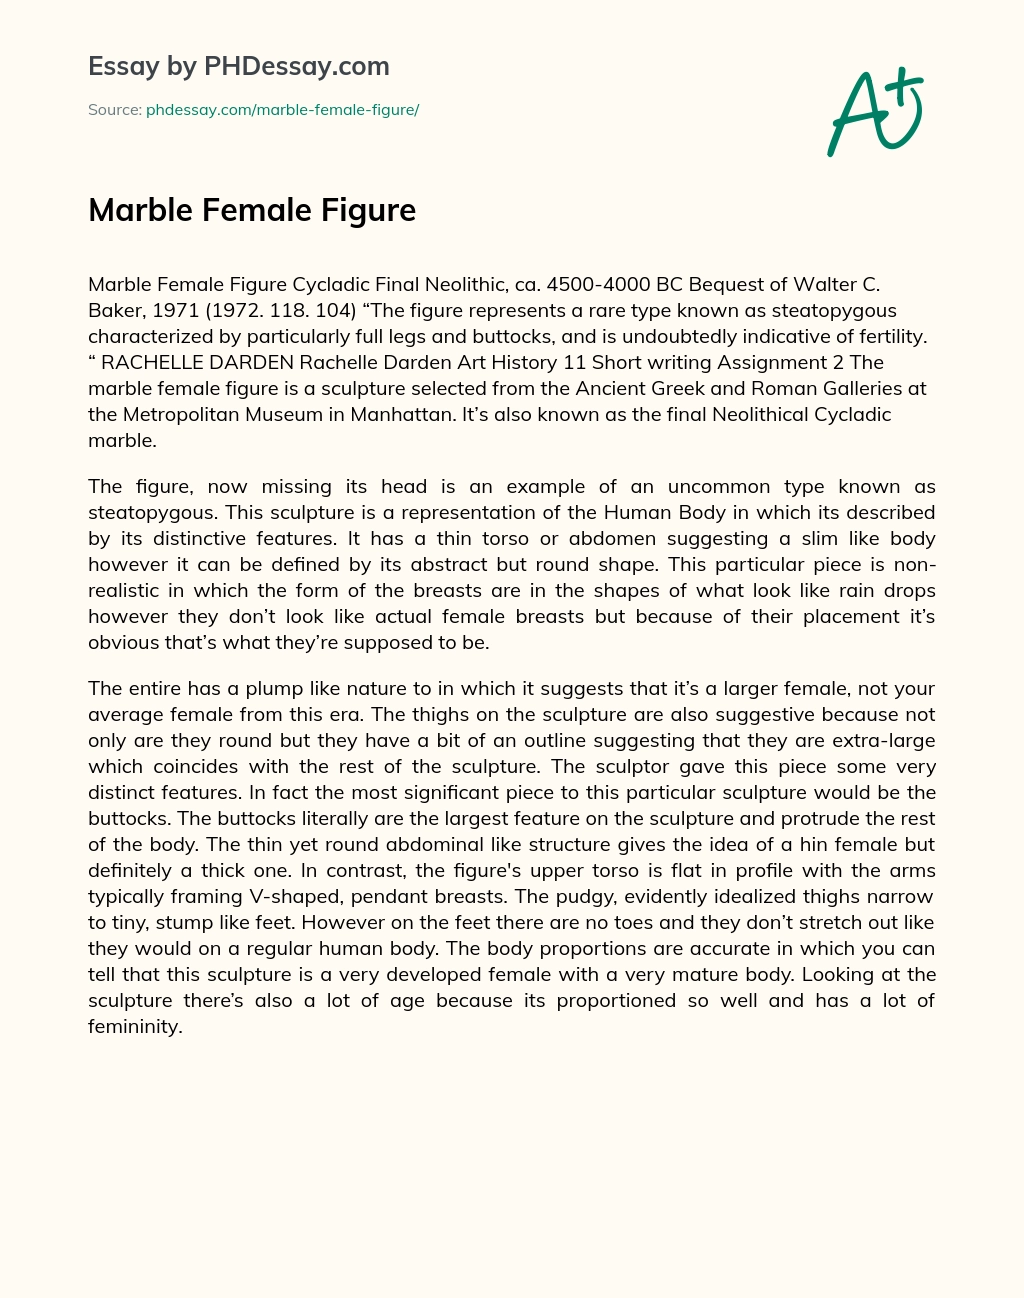 Marble Female Figure essay